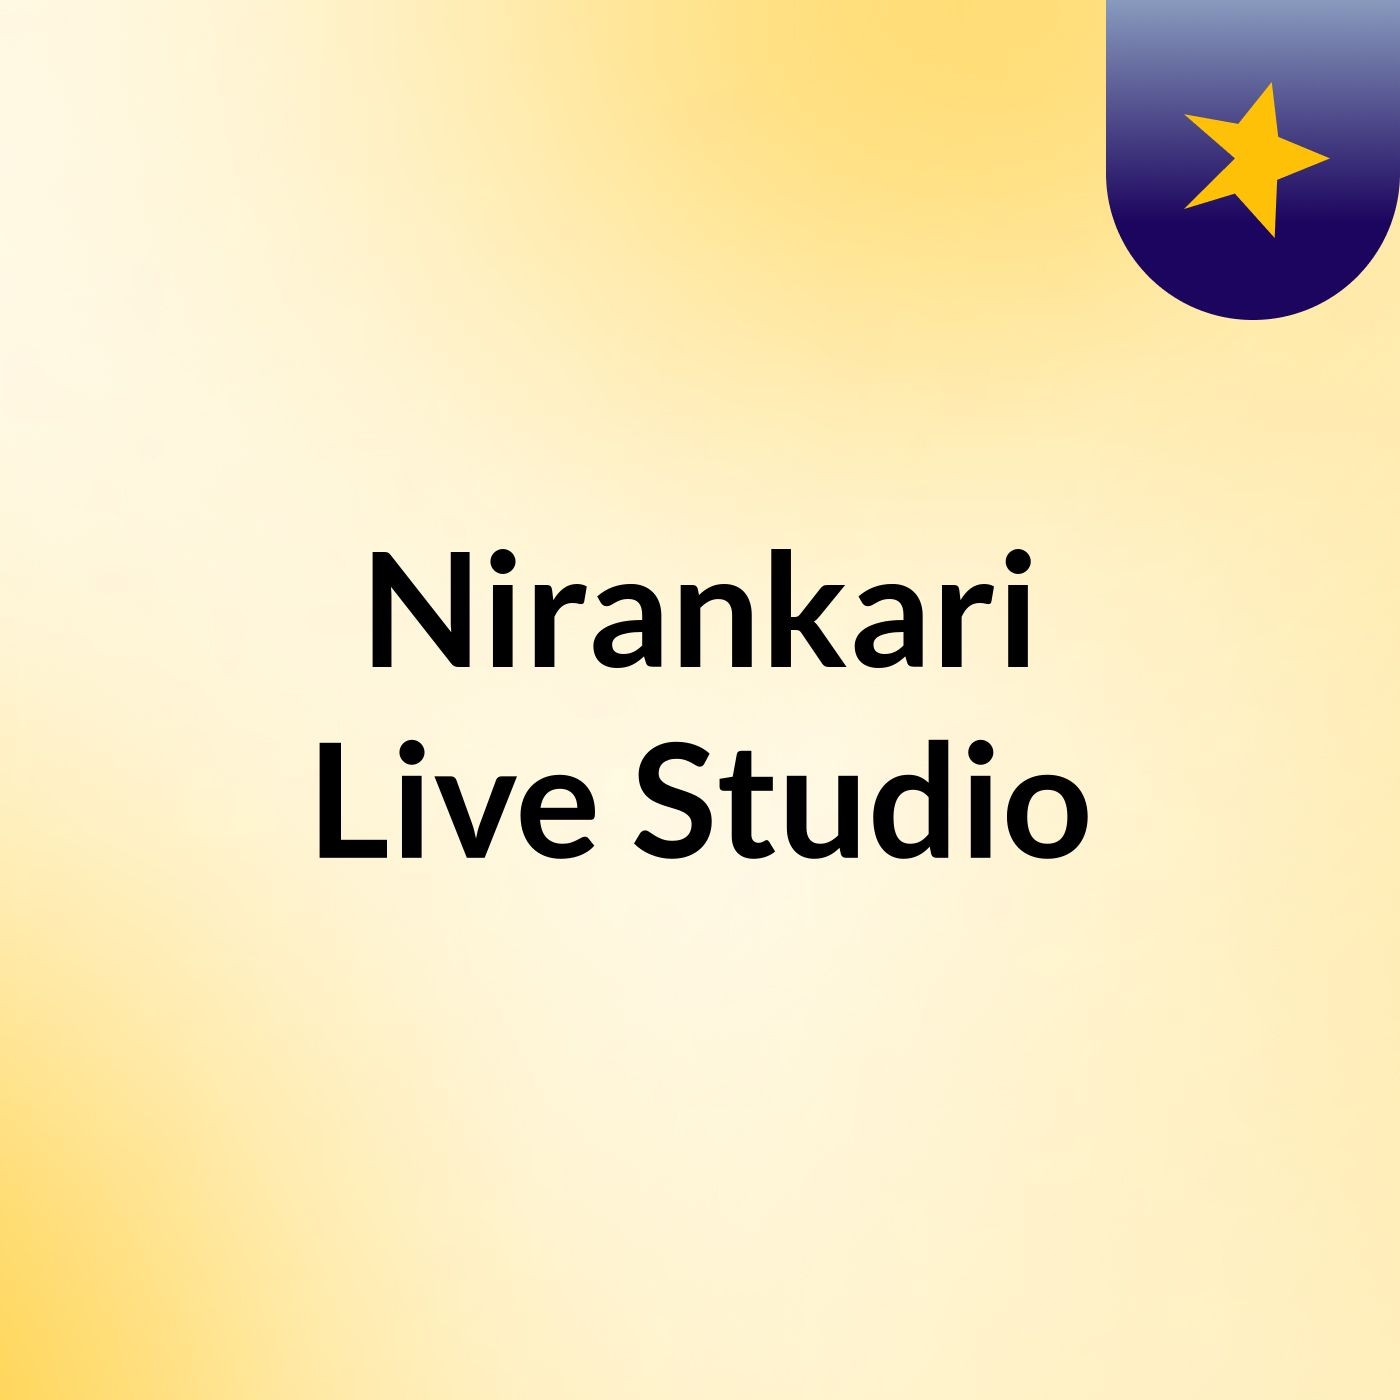 Episode 5 - Nirankari Live Studio